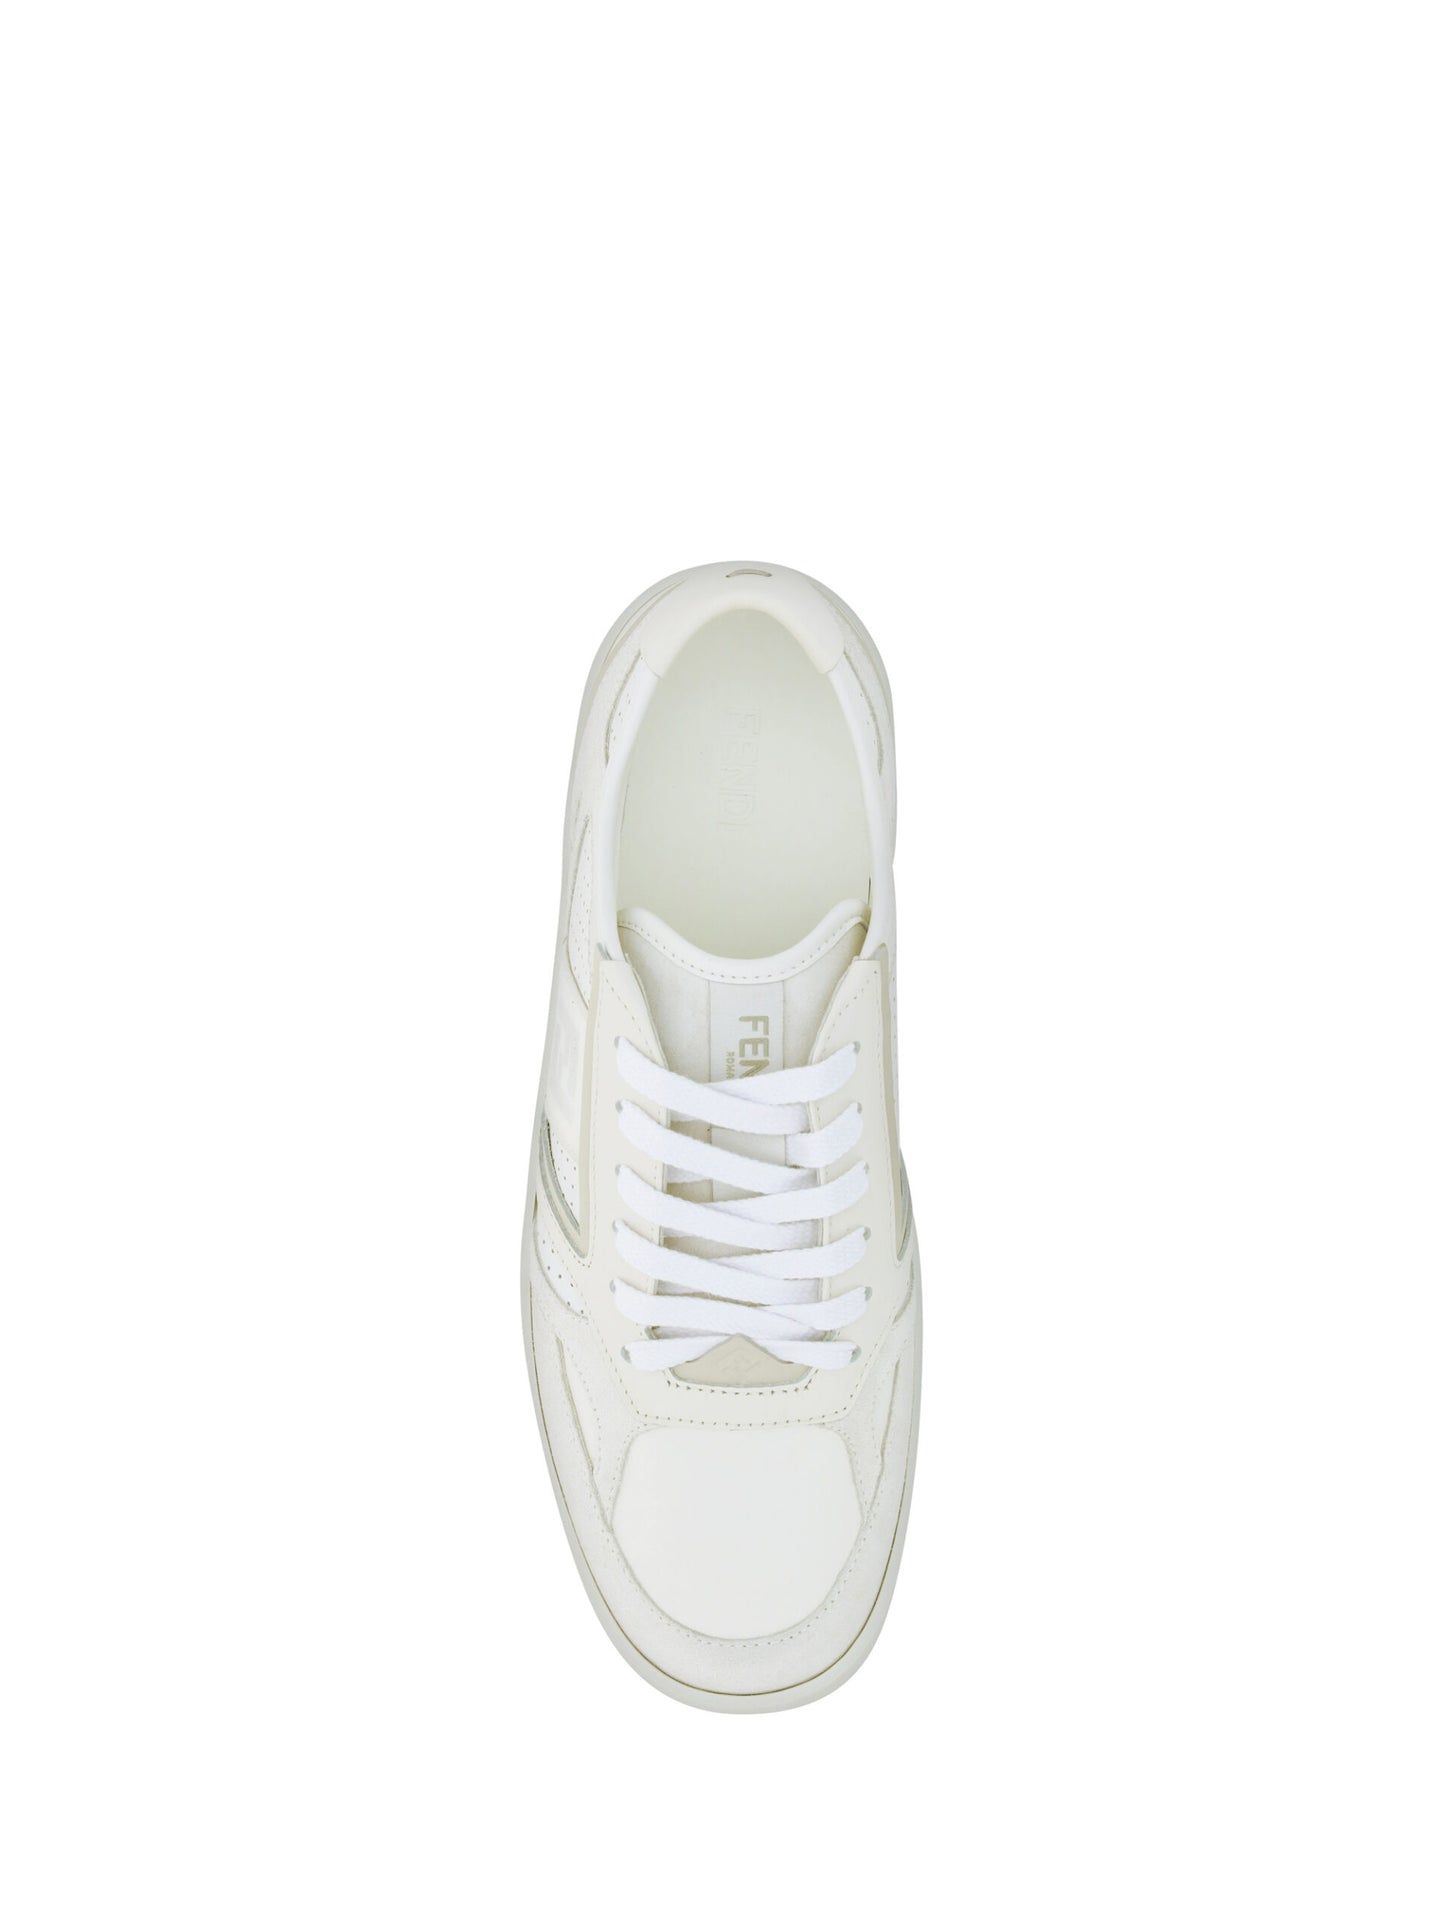 Fendi White Leather Men Sneakers | Fashionsarah.com